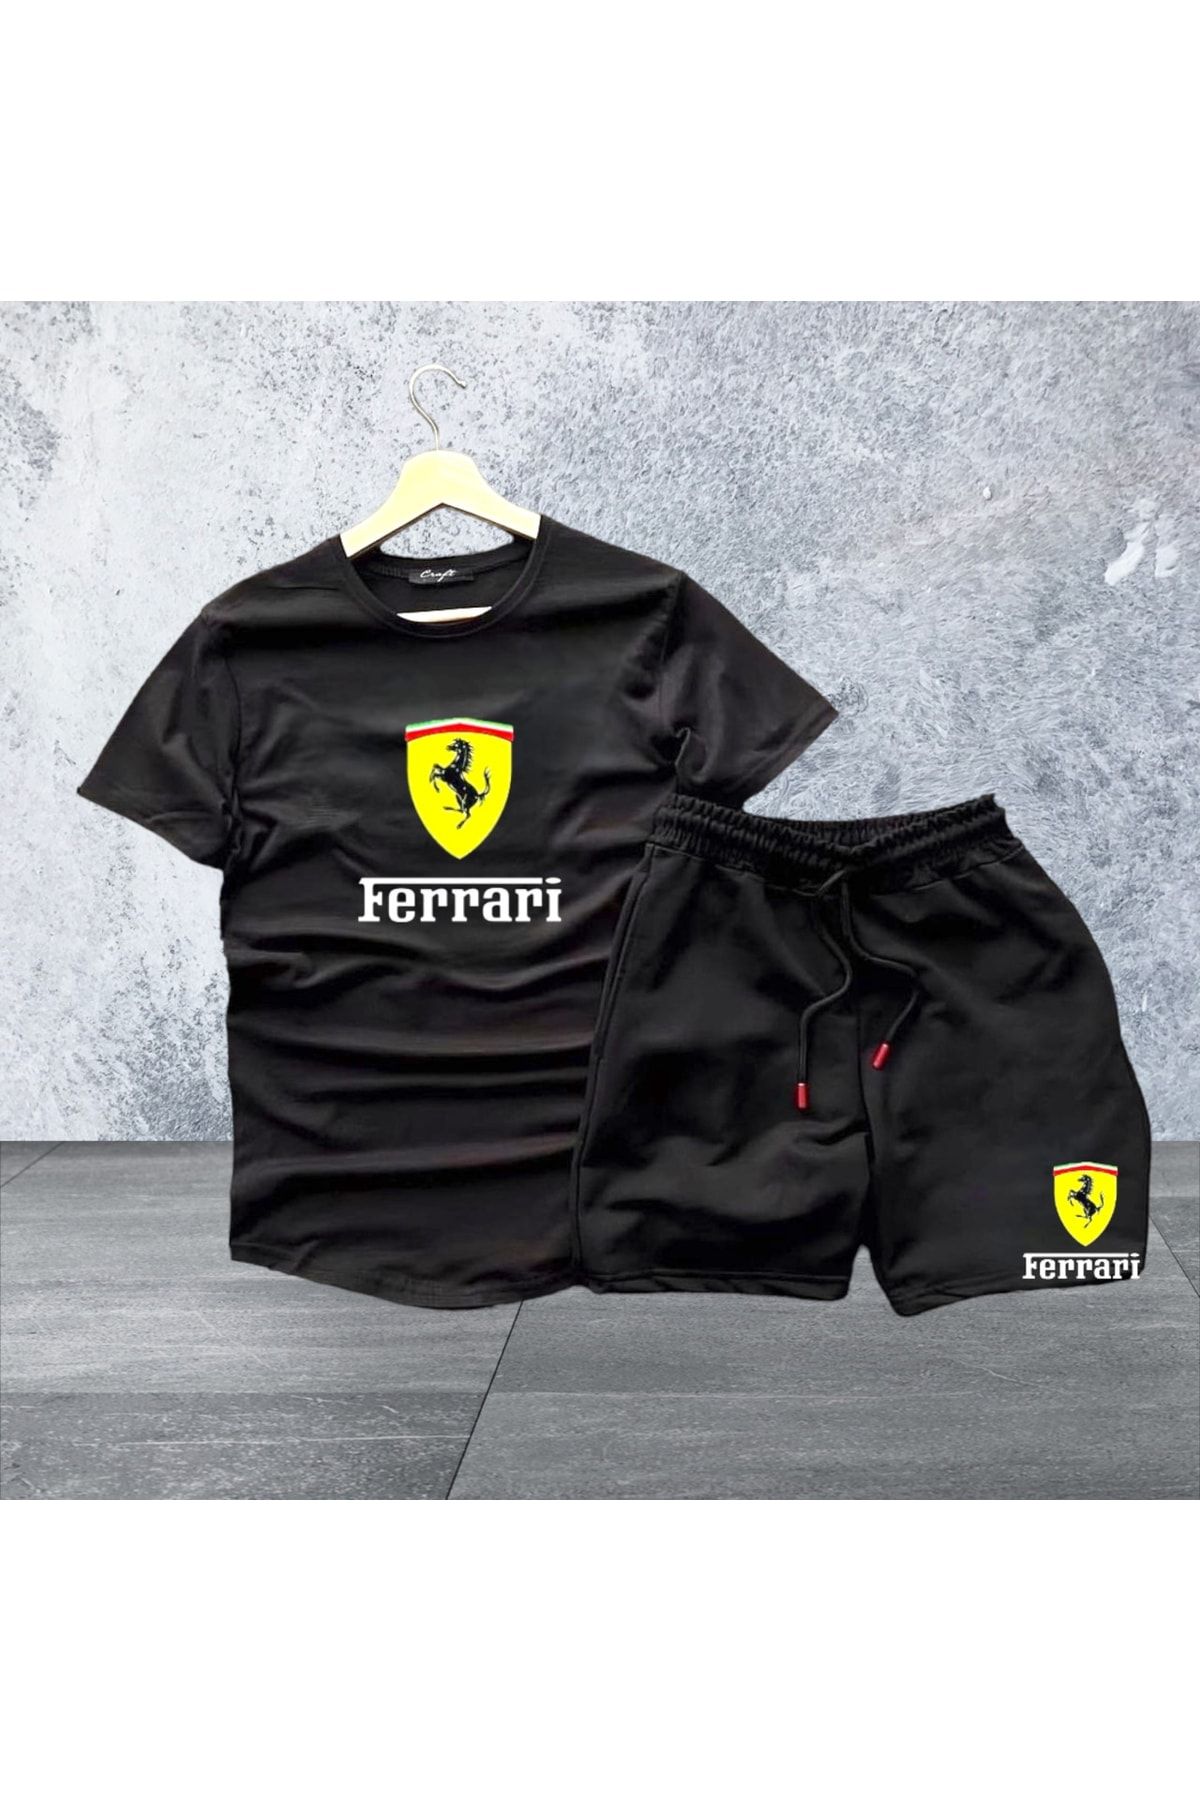 NewCabin Yeni Sezon Ferrari Baskılı Tişört-şort- 2 Li Slim Fit Takım